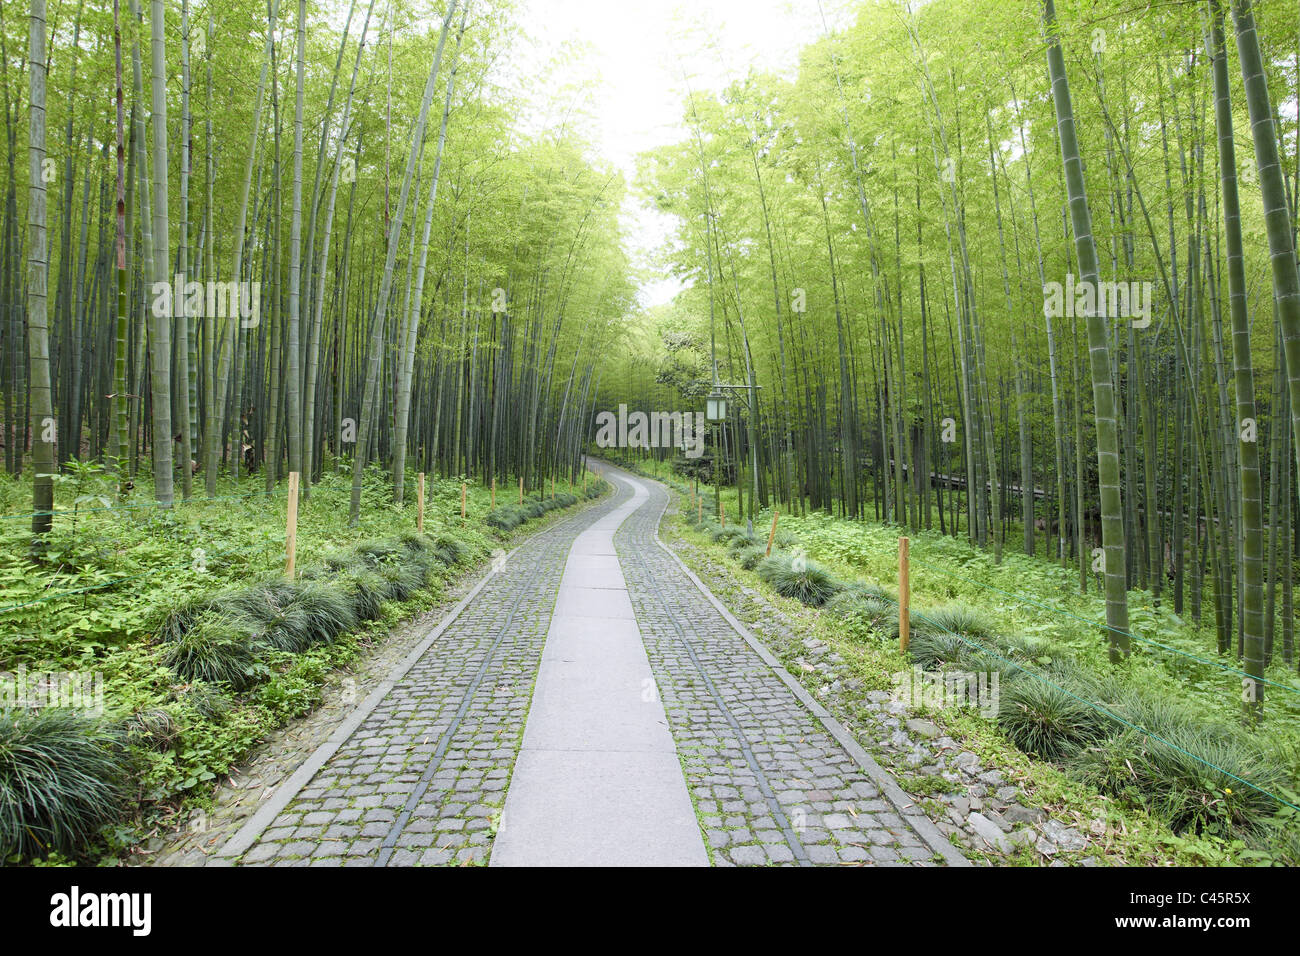 Verde foresta di bamboo : un sentiero conduce attraverso un rigoglioso bosco di bambù. Foto Stock